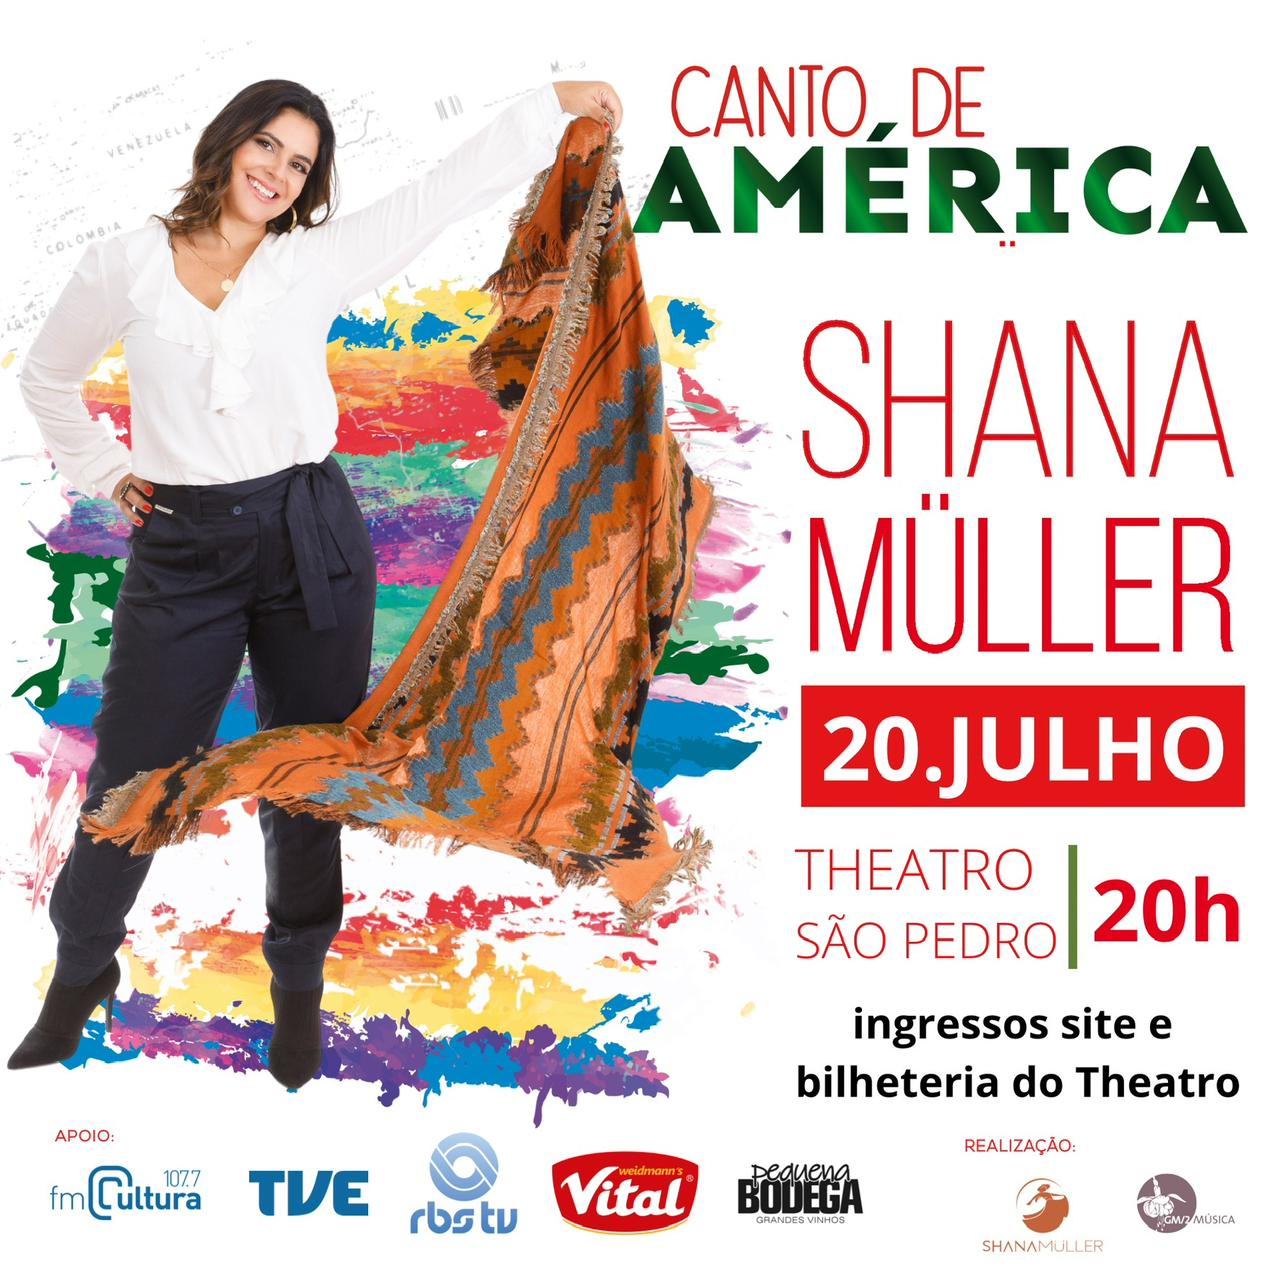 Shana Müller canta a América em show no Theatro São Pedro em Porto Alegre